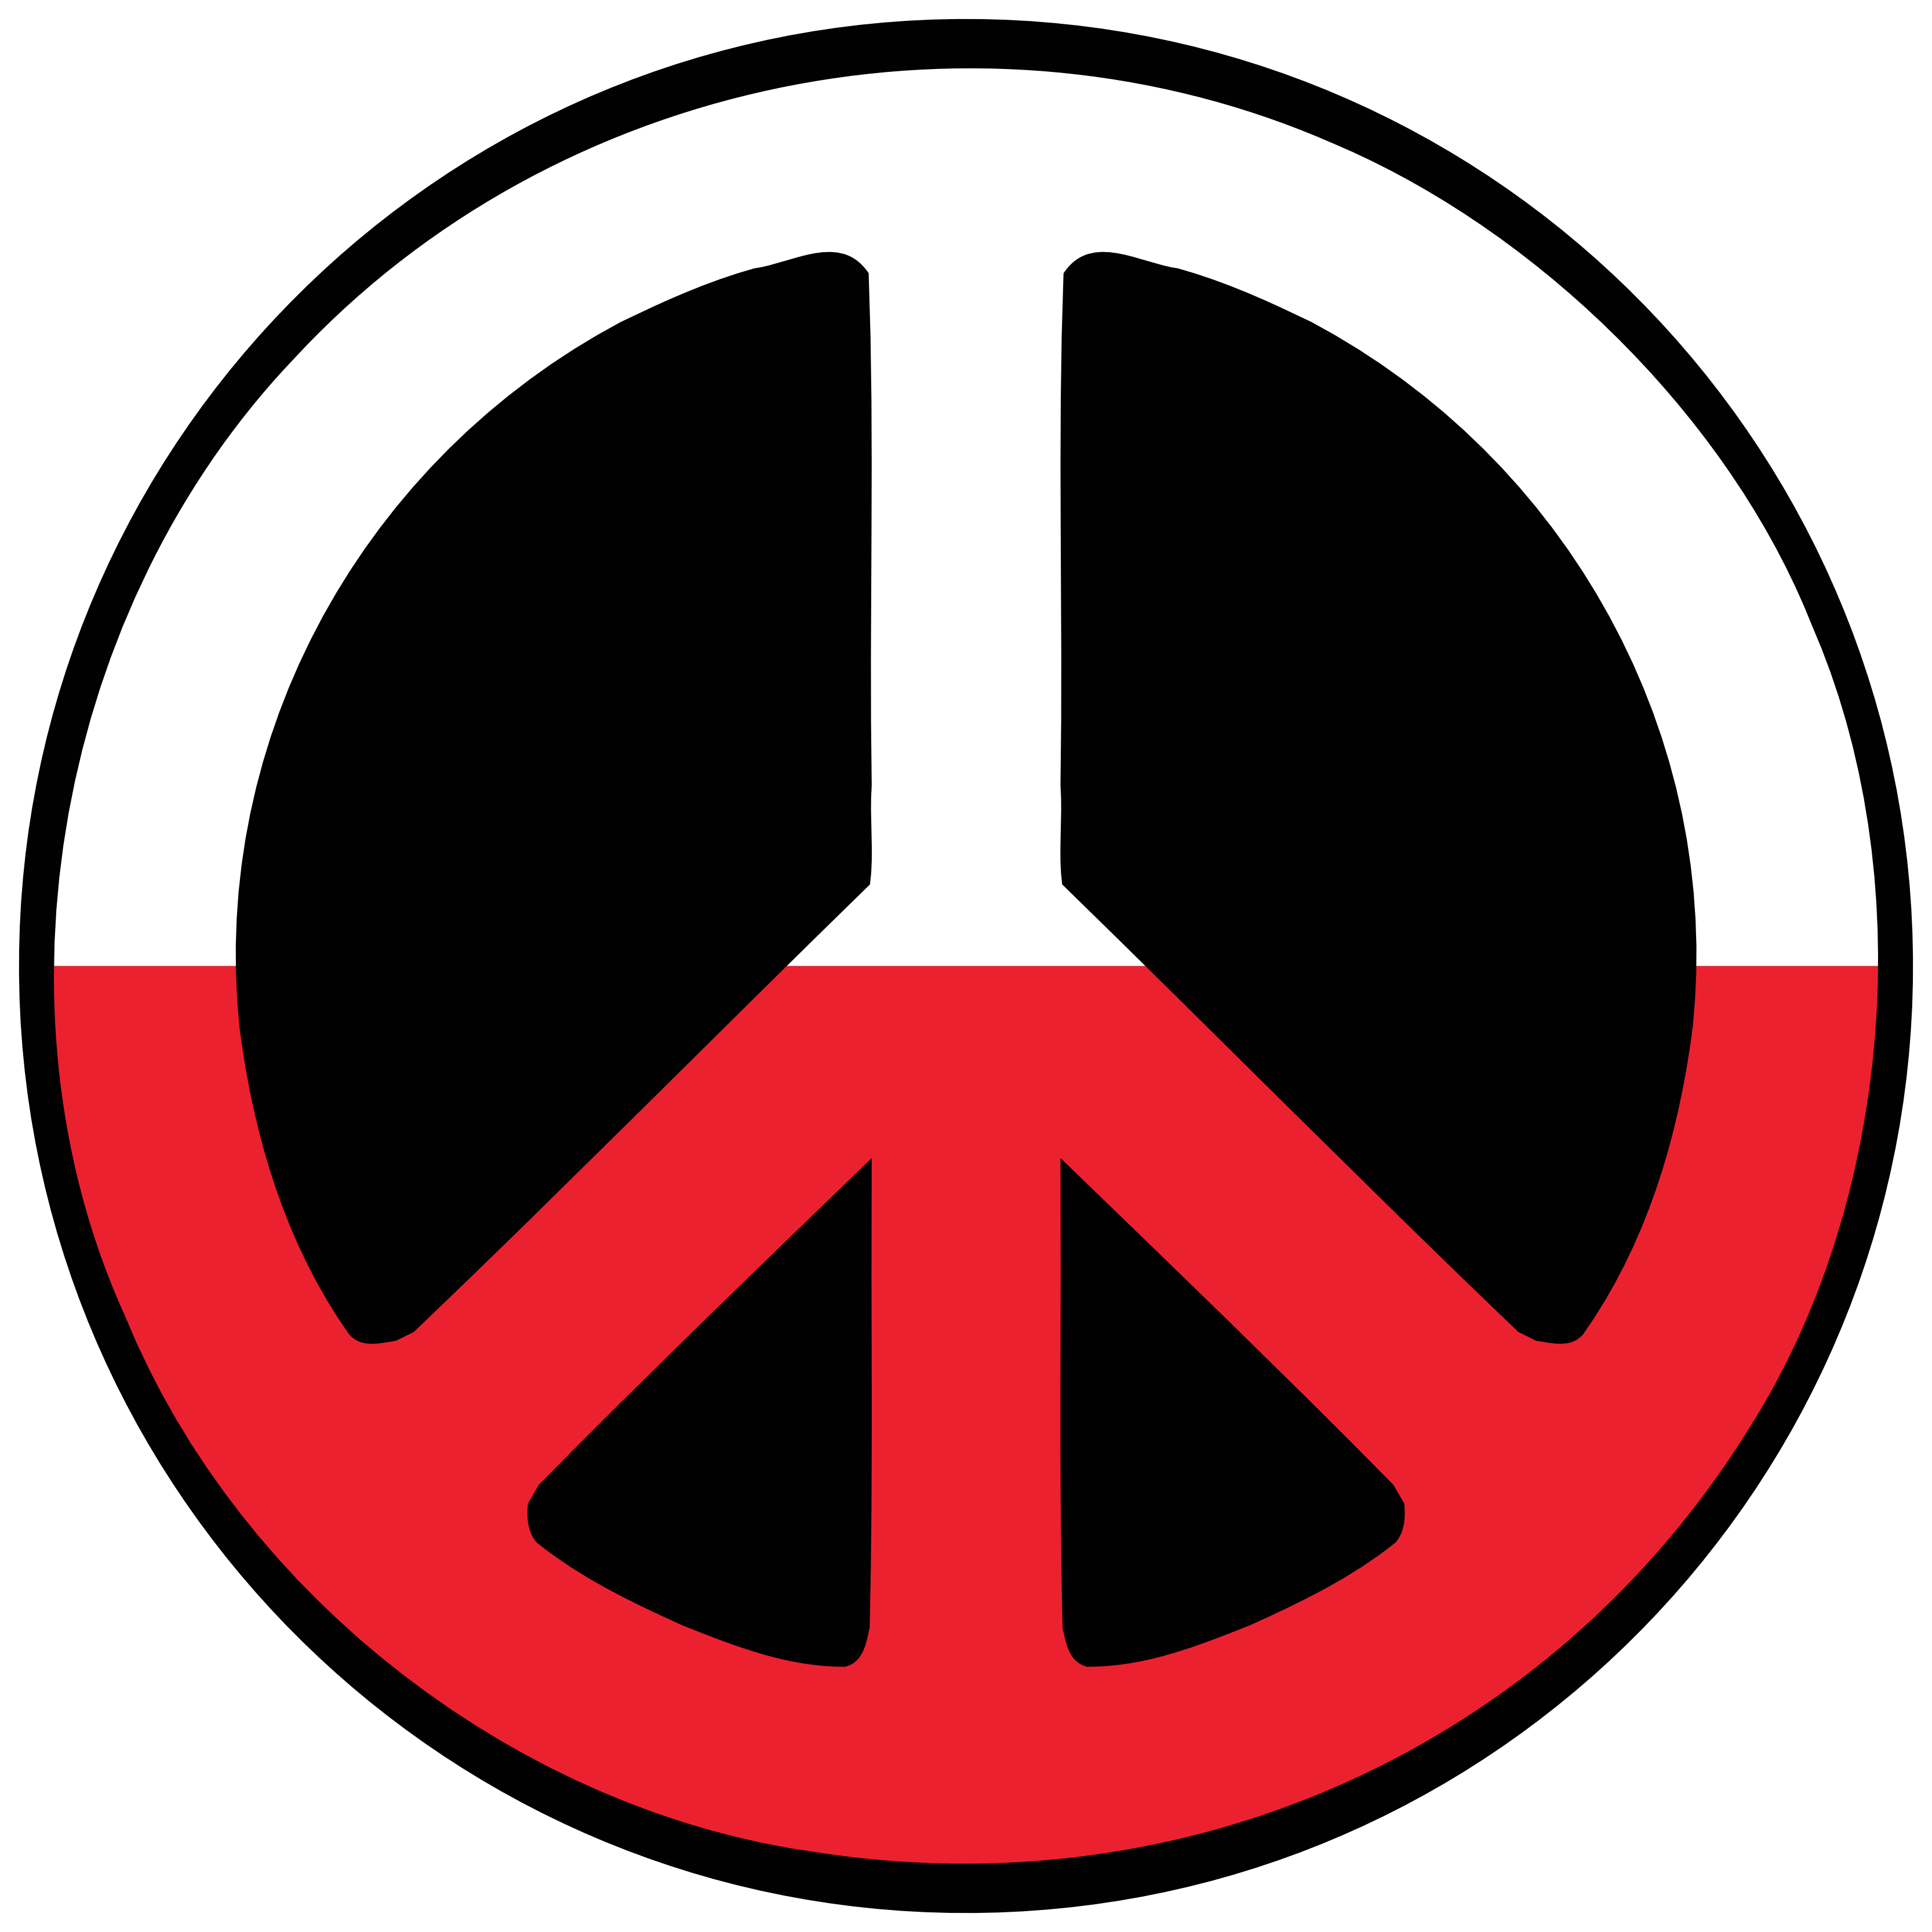 Poland Peace Symbol Flag 4 Peace Flags Peace Symbol Sign CND Logo ...